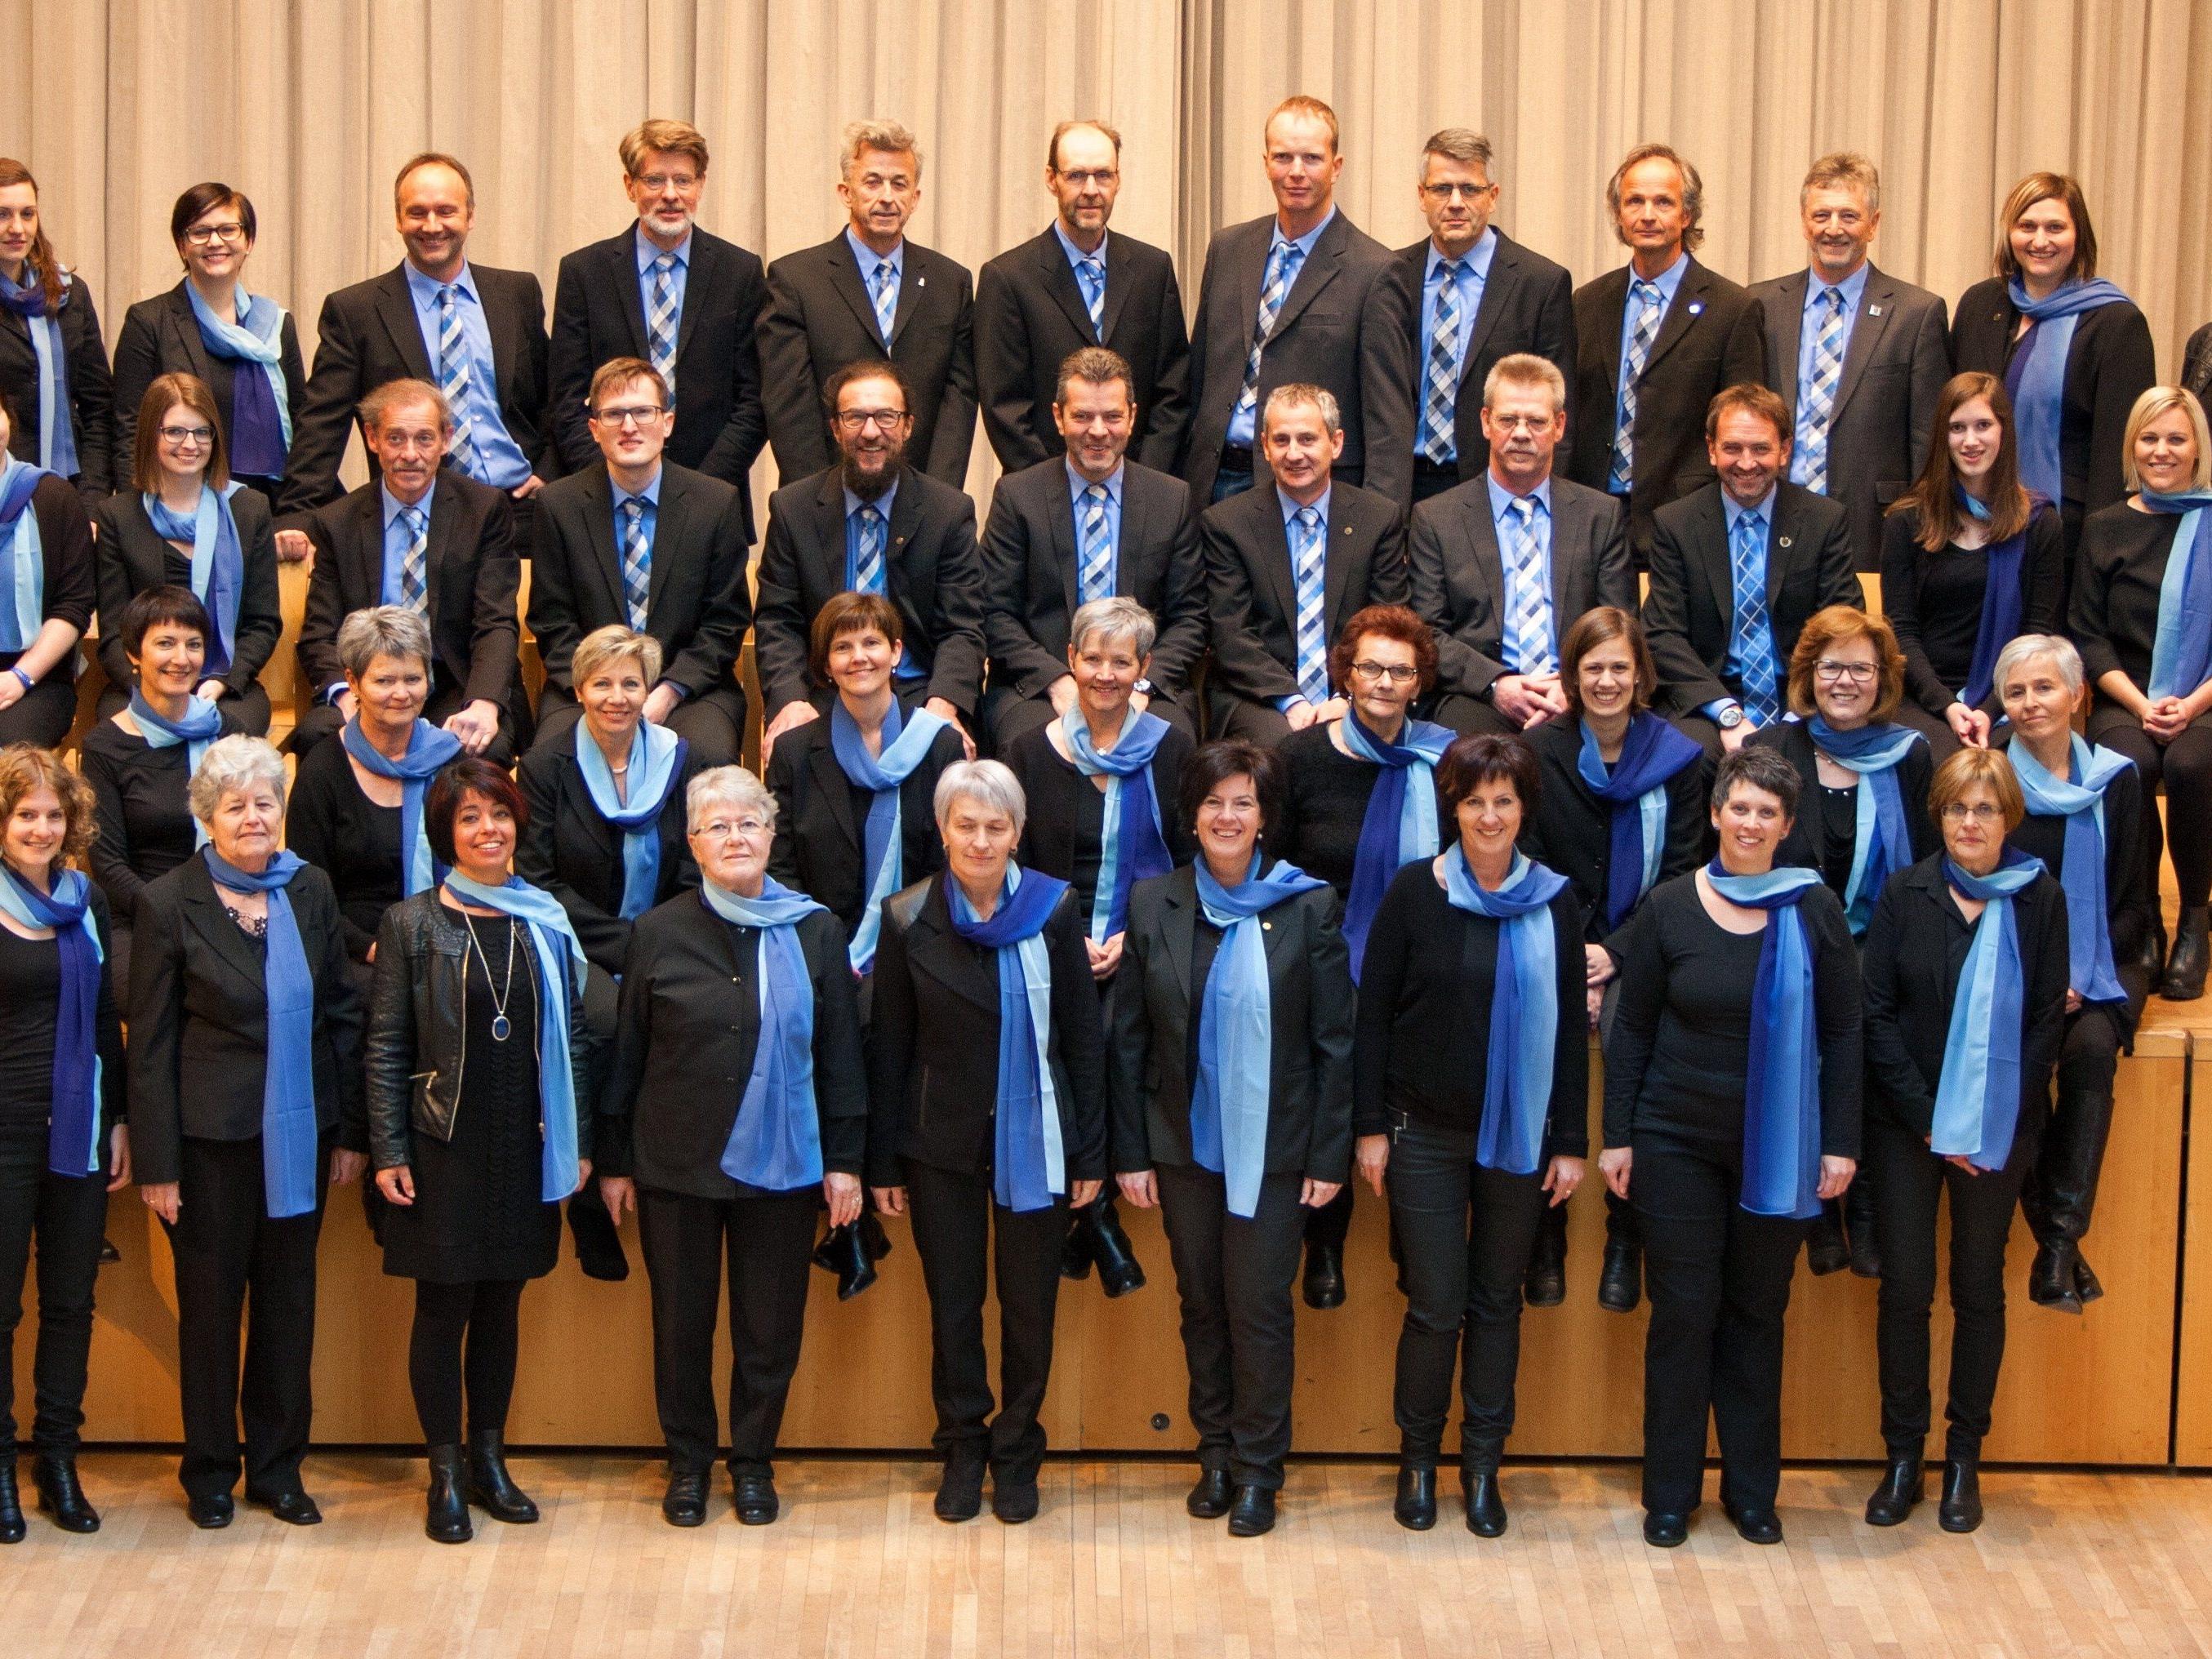 Die Chorgemeinschaft Hittisau lädt zum Jubiläumskonzert.